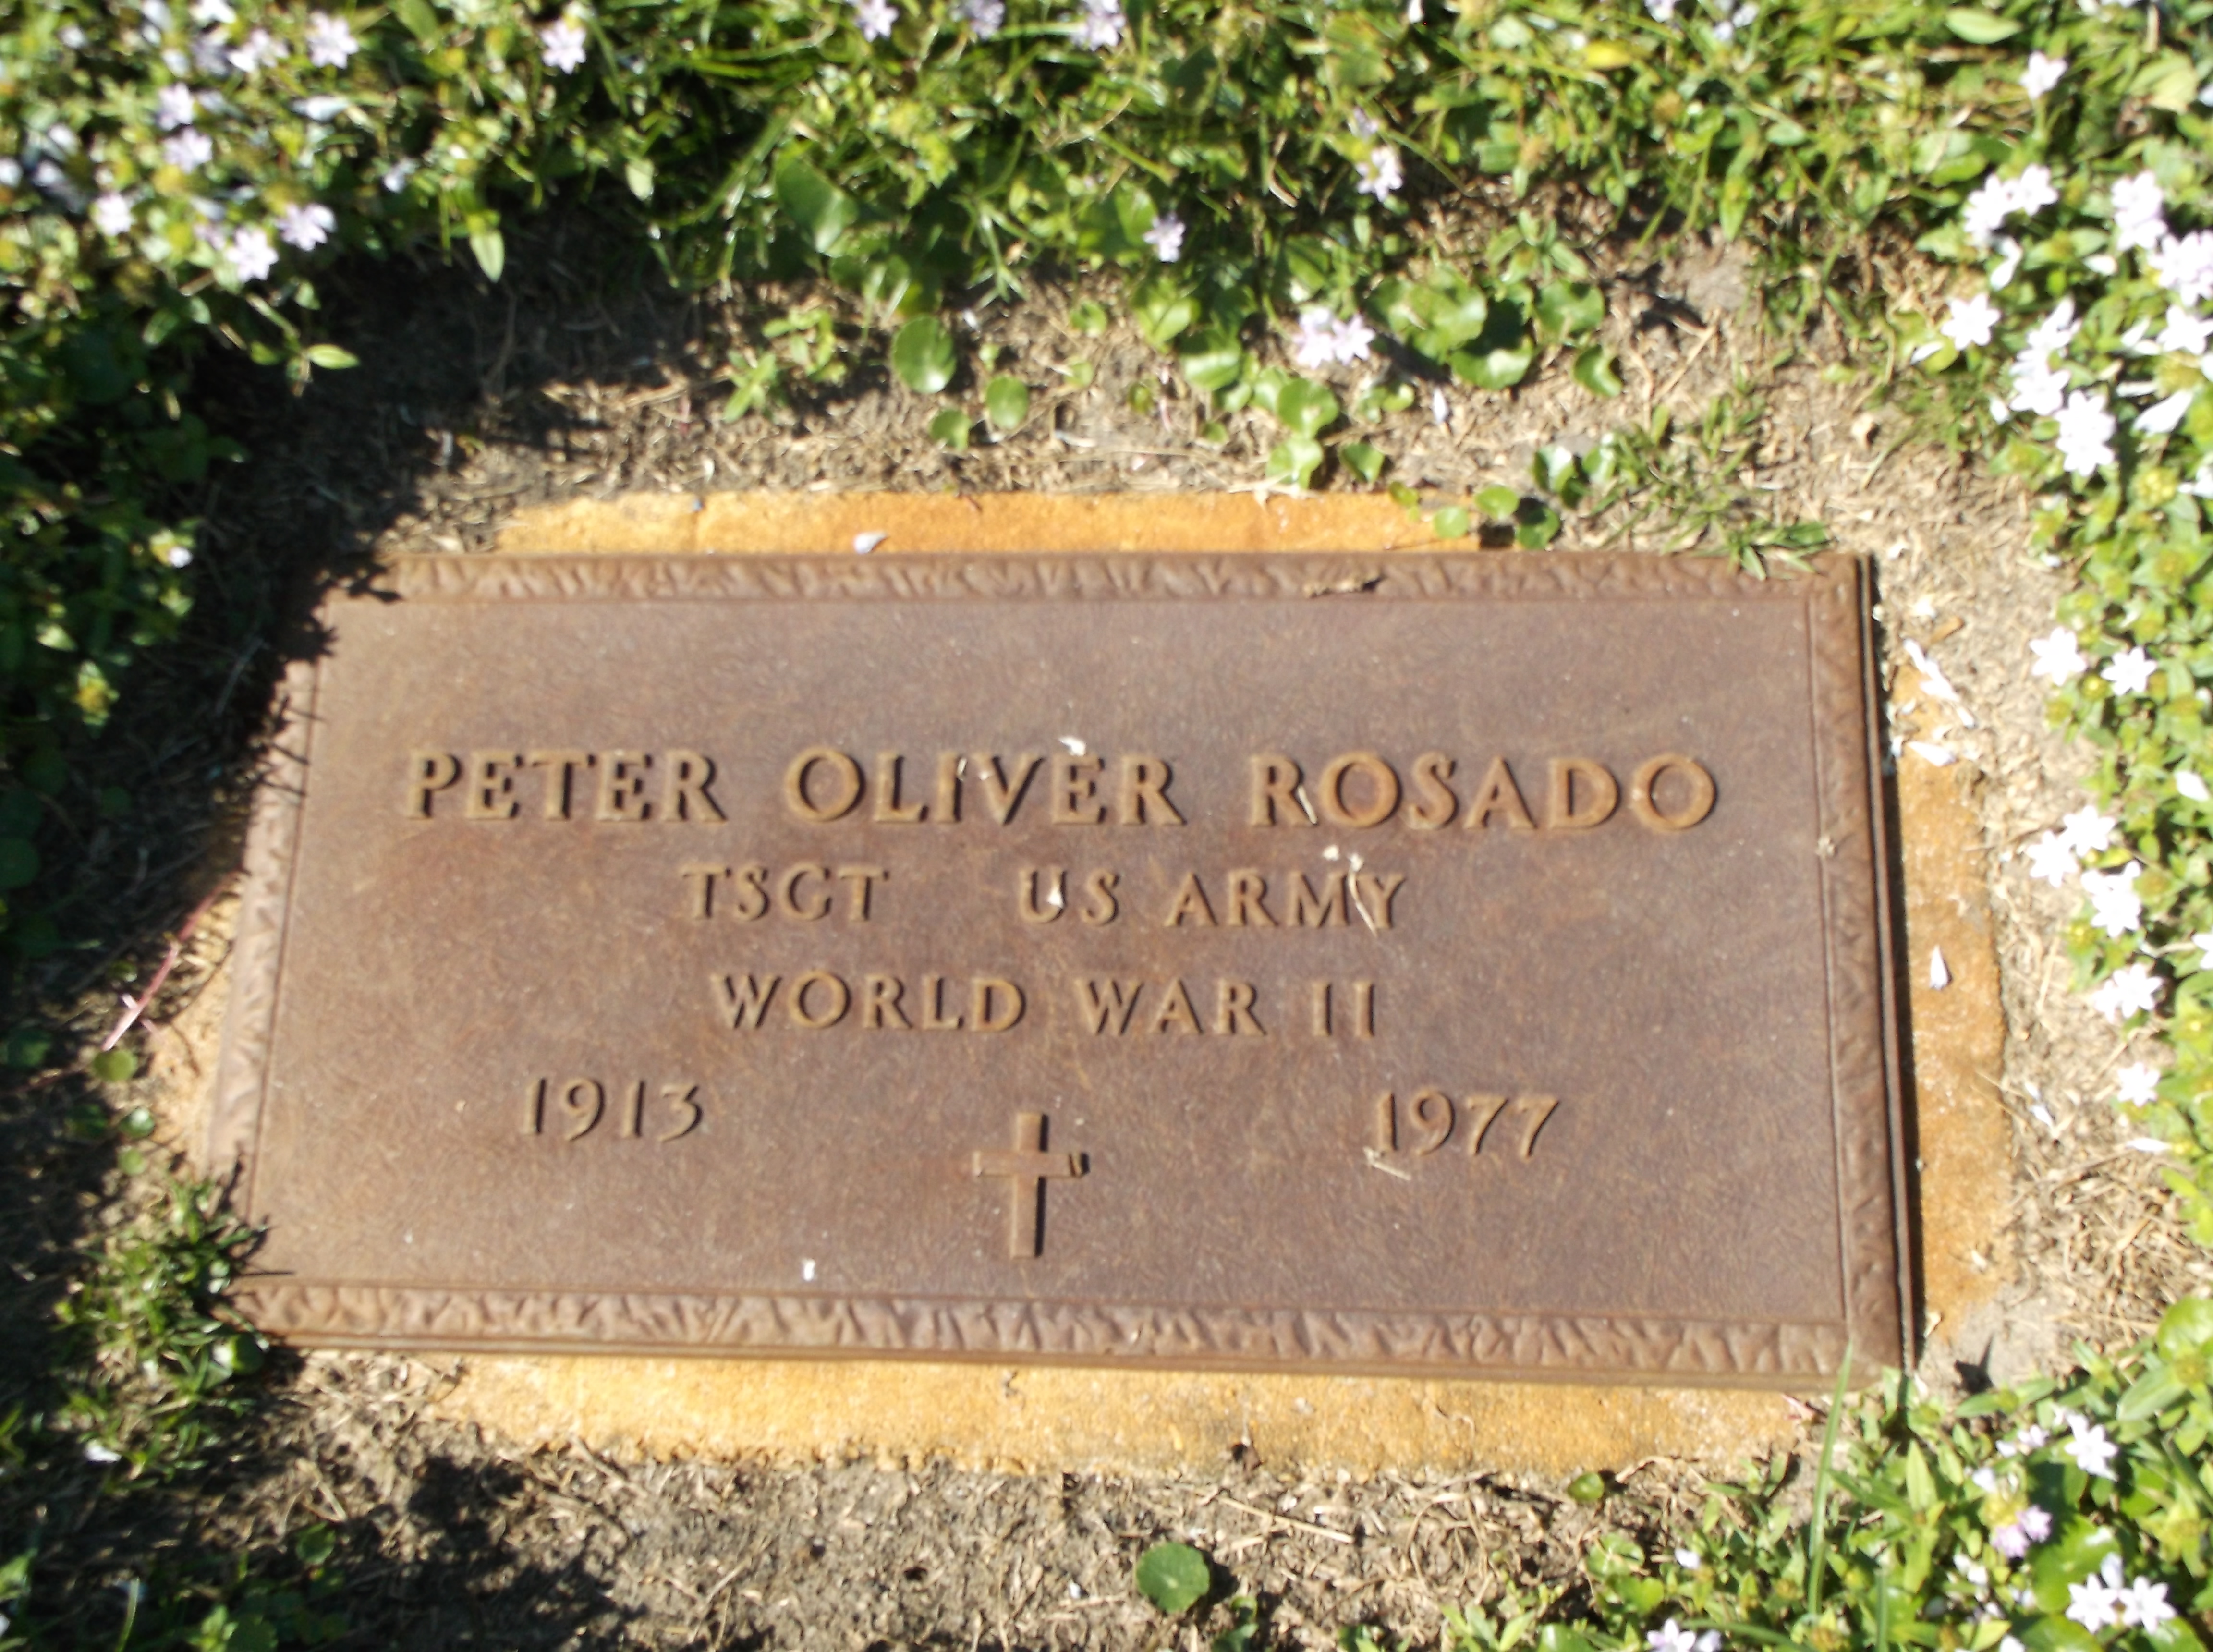 Peter Oliver Rosado